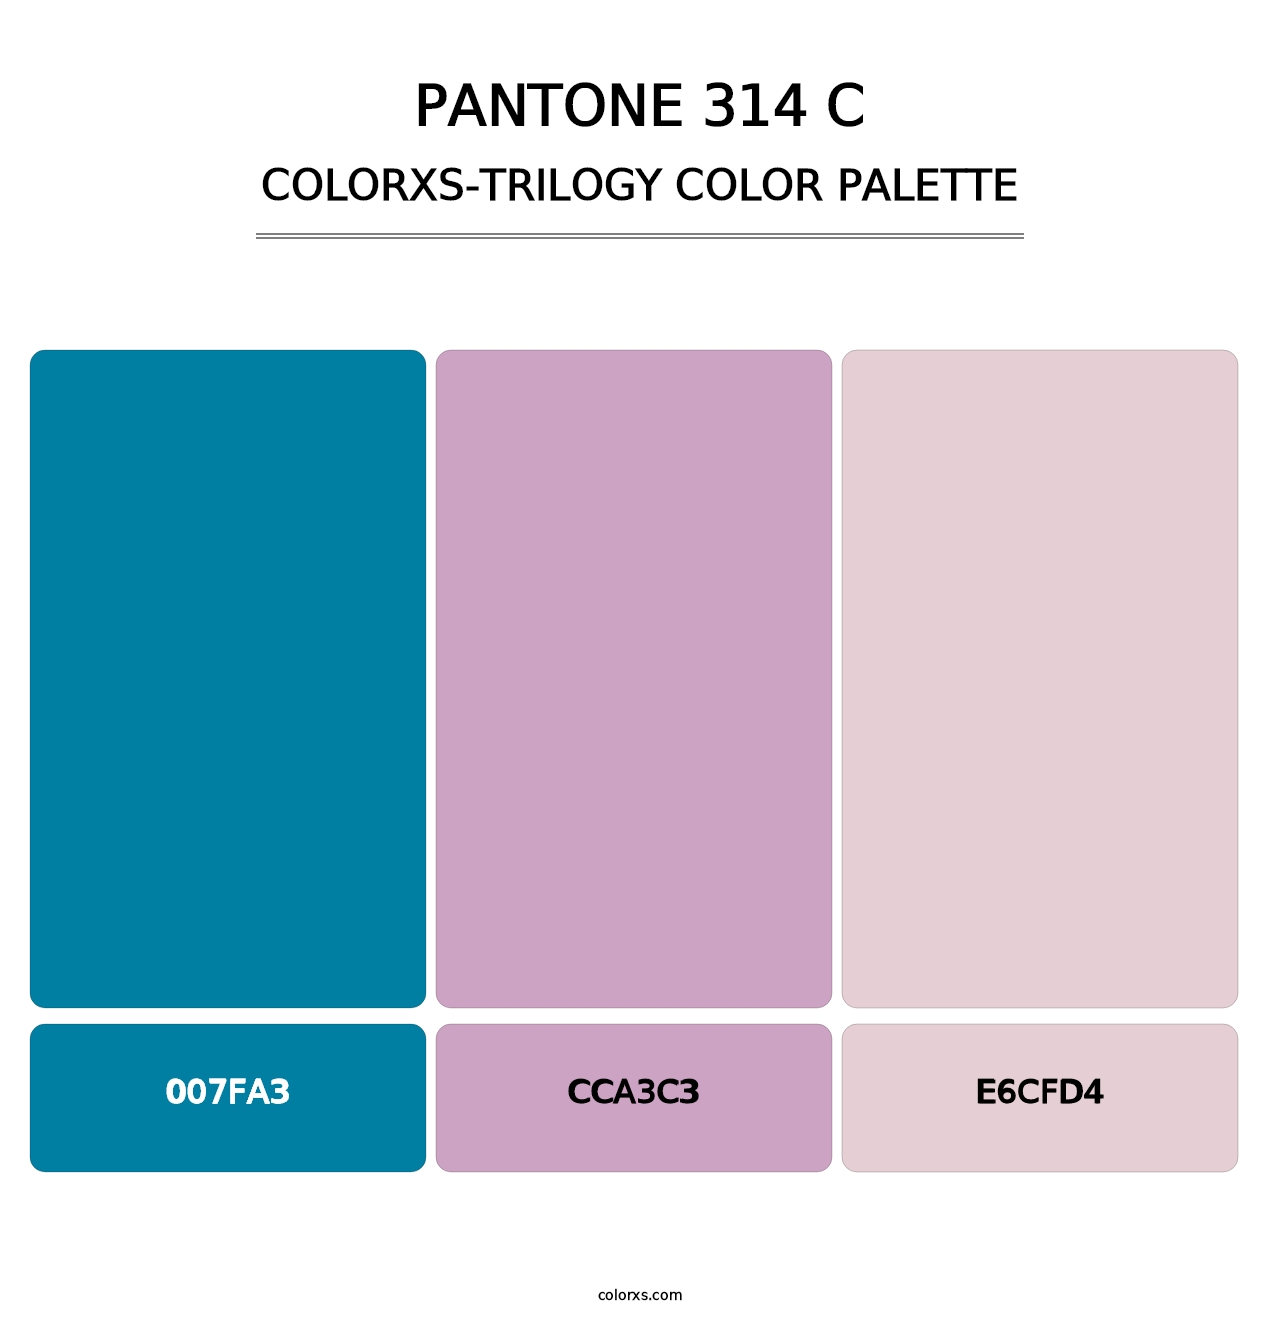 PANTONE 314 C - Colorxs Trilogy Palette